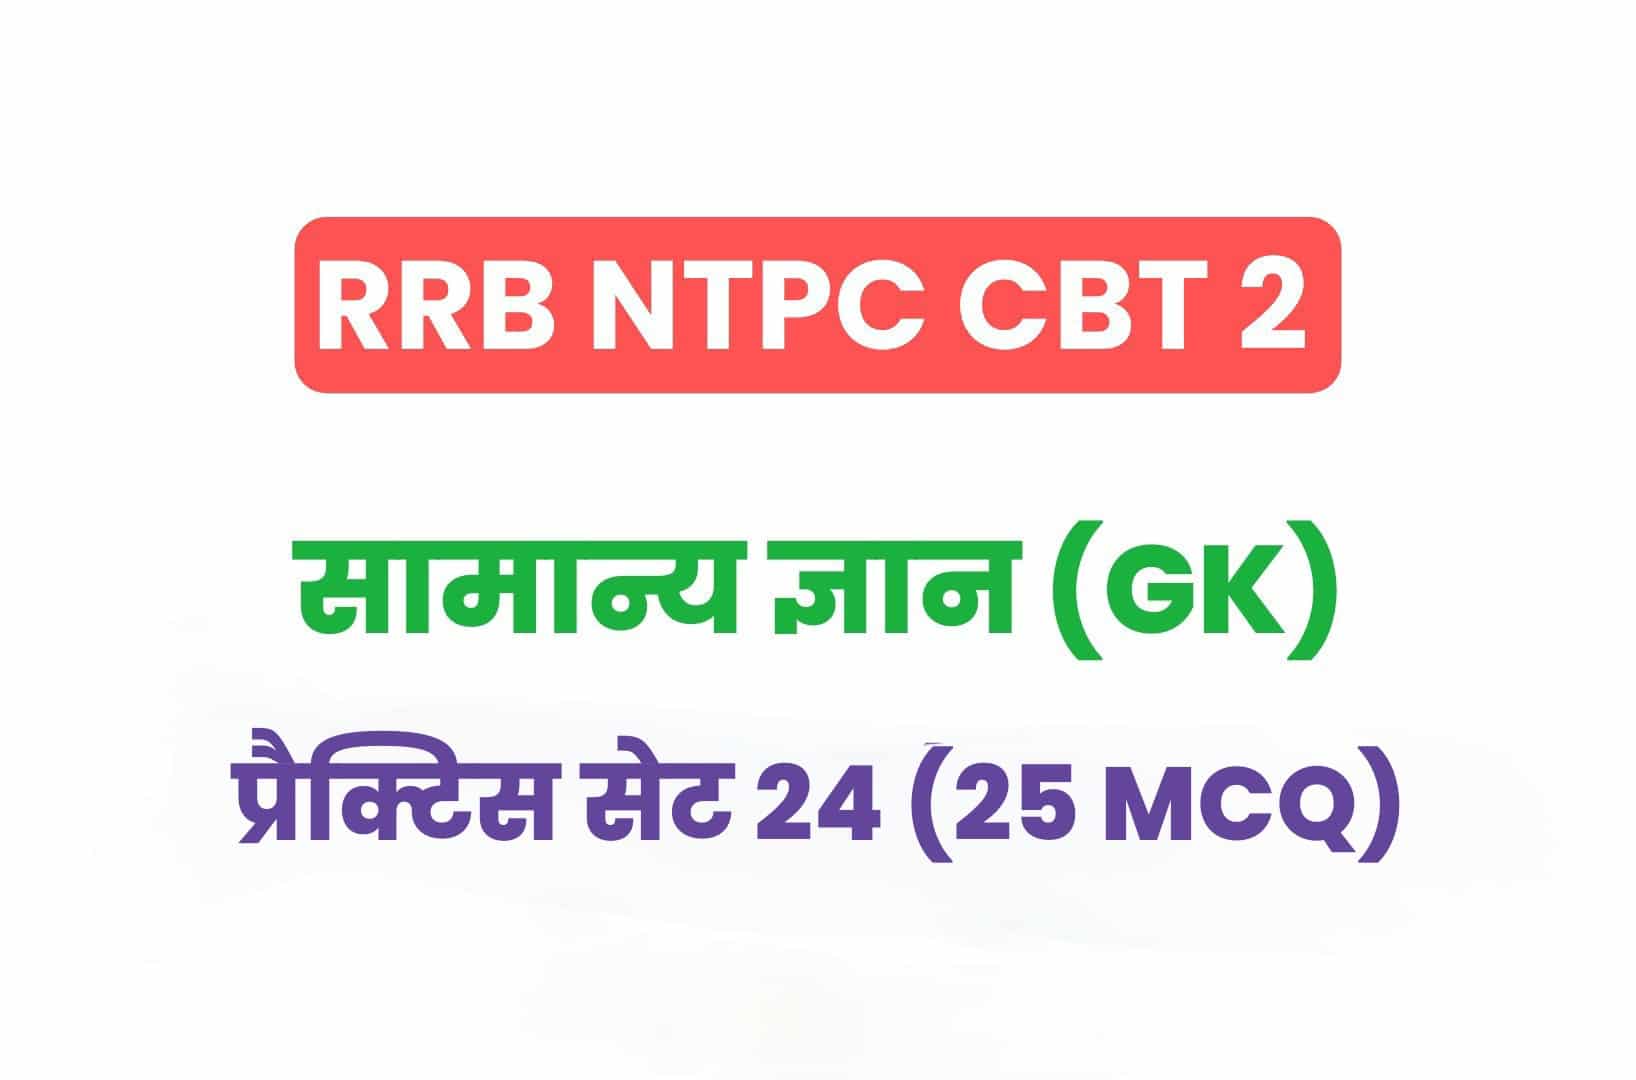 RRB NTPC CBT 2 GK प्रैक्टिस सेट 24: सामान्य ज्ञान के इन महत्वपूर्ण प्रश्नों का करें अध्ययन